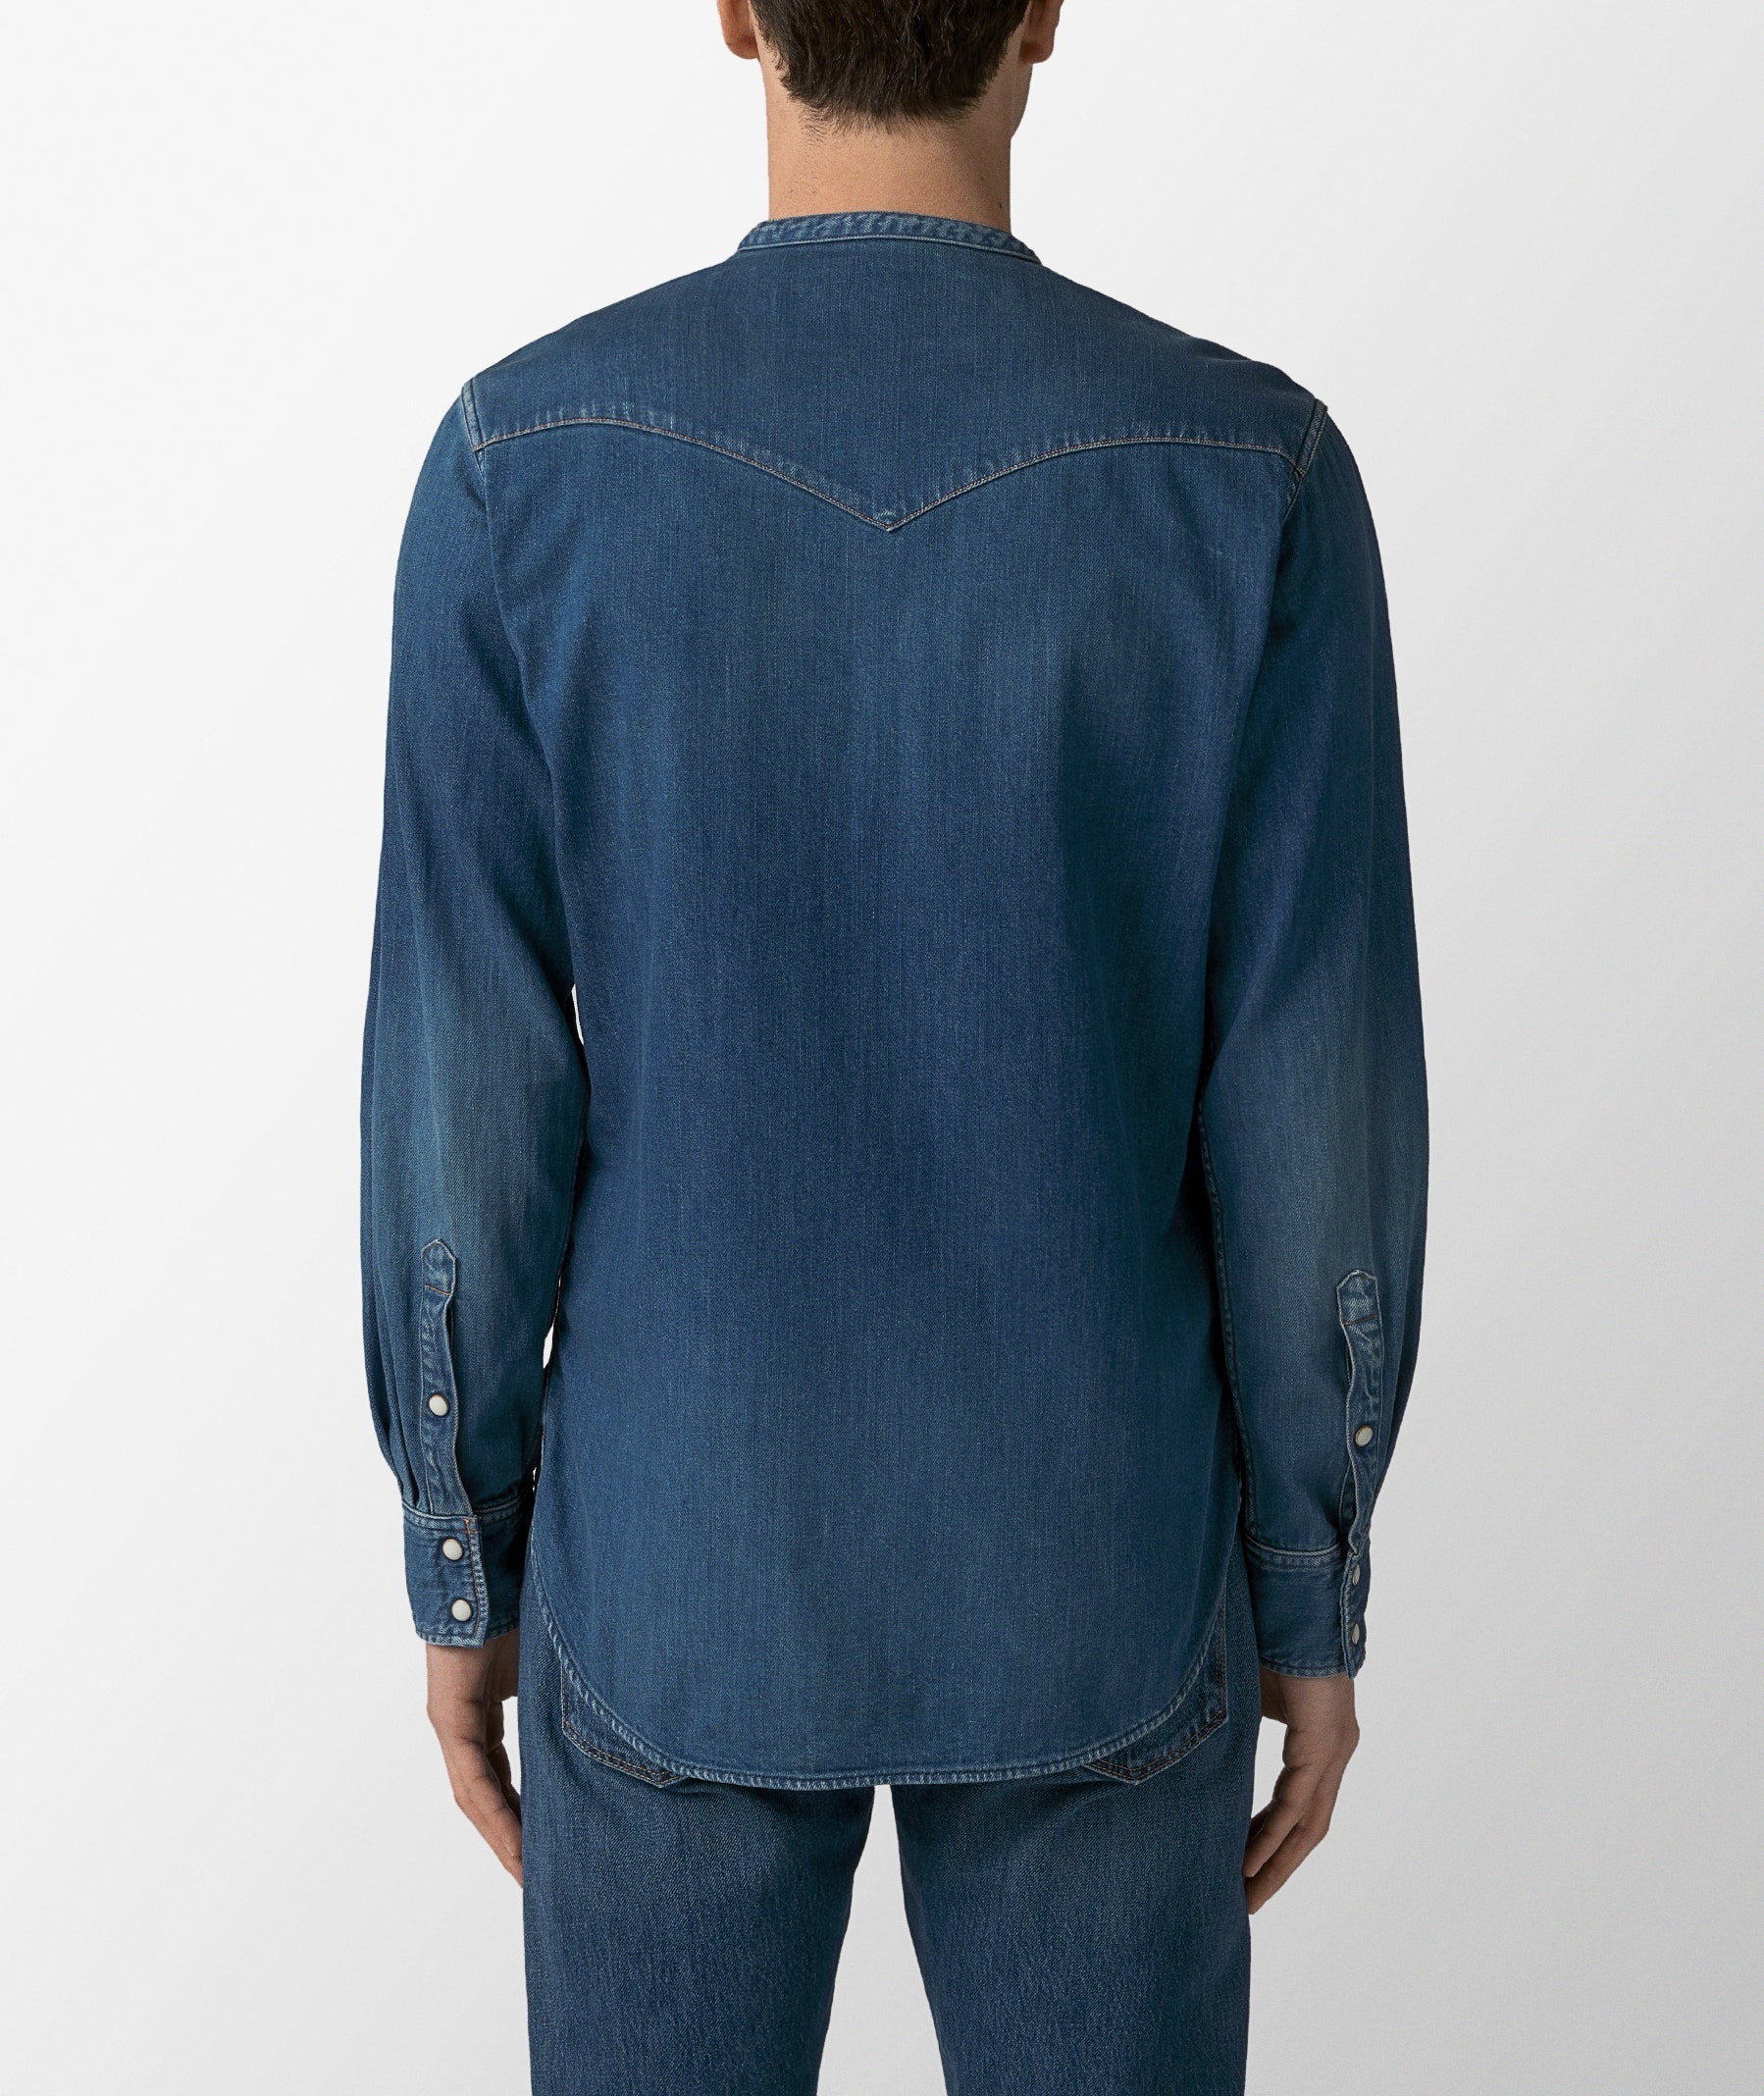 Indigo-Dyed Textured-Cotton Western Shirt